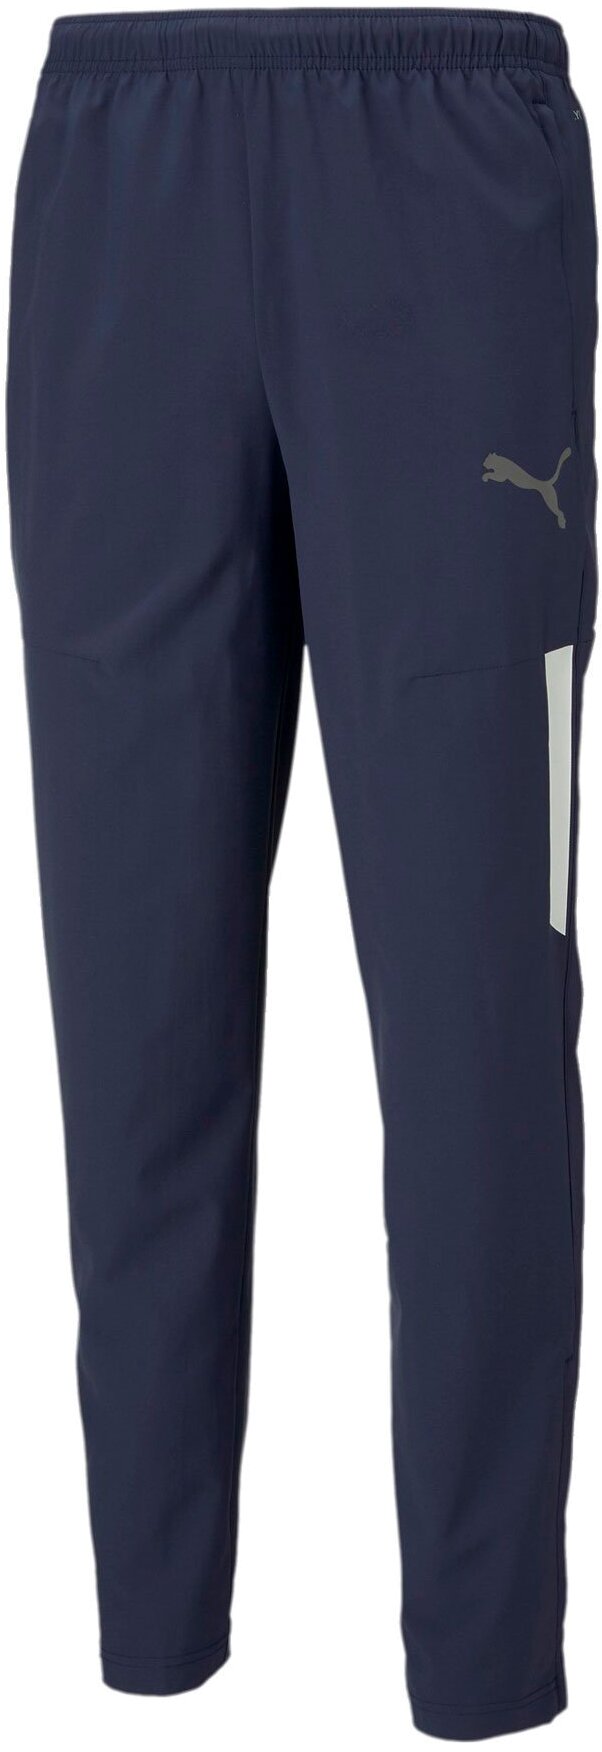 Спортивные брюки мужские PUMA teamLIGA Sideline Pants синие M